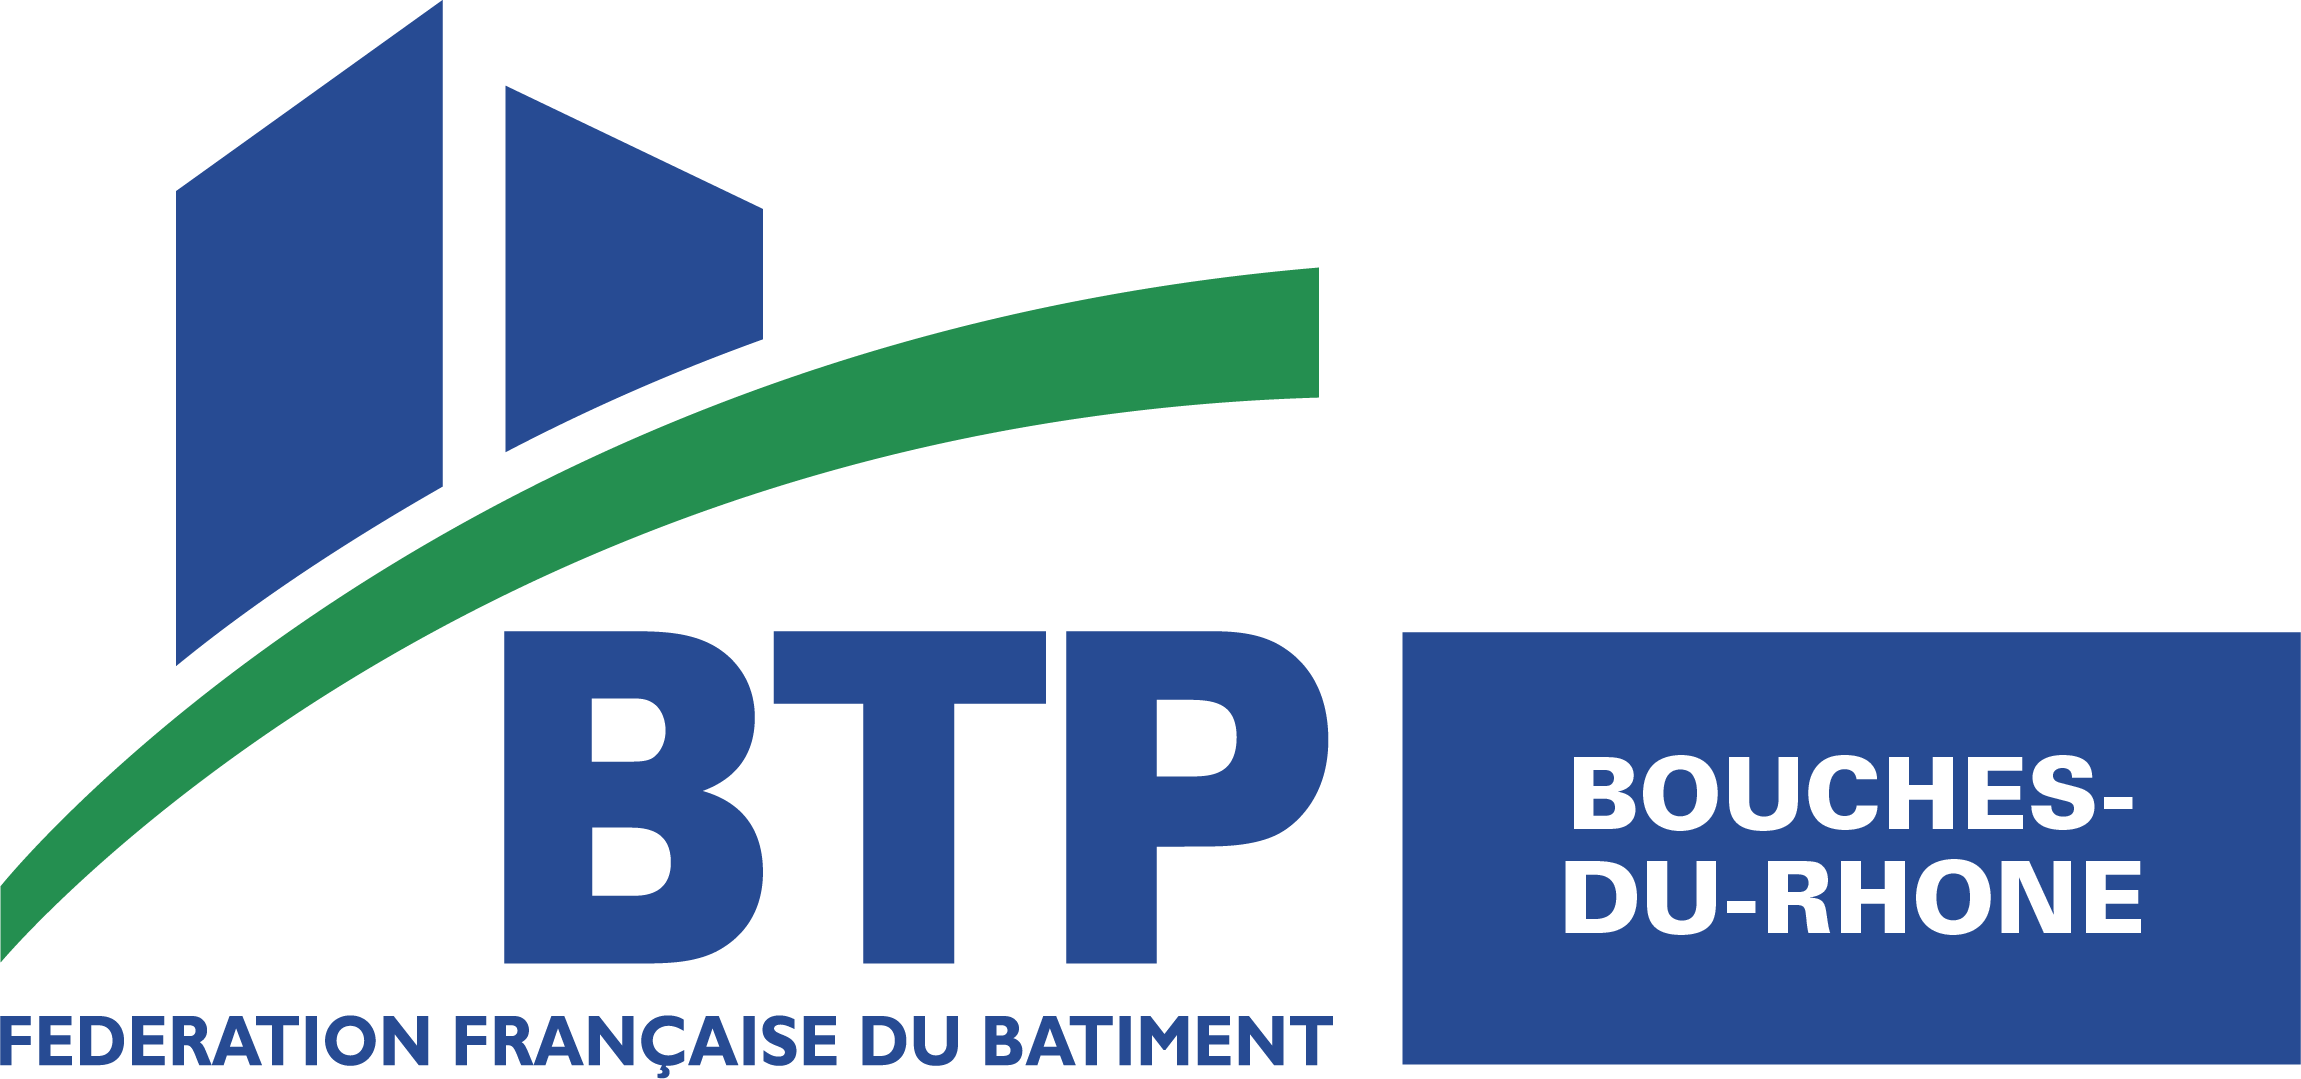 logo FD 13 BTP